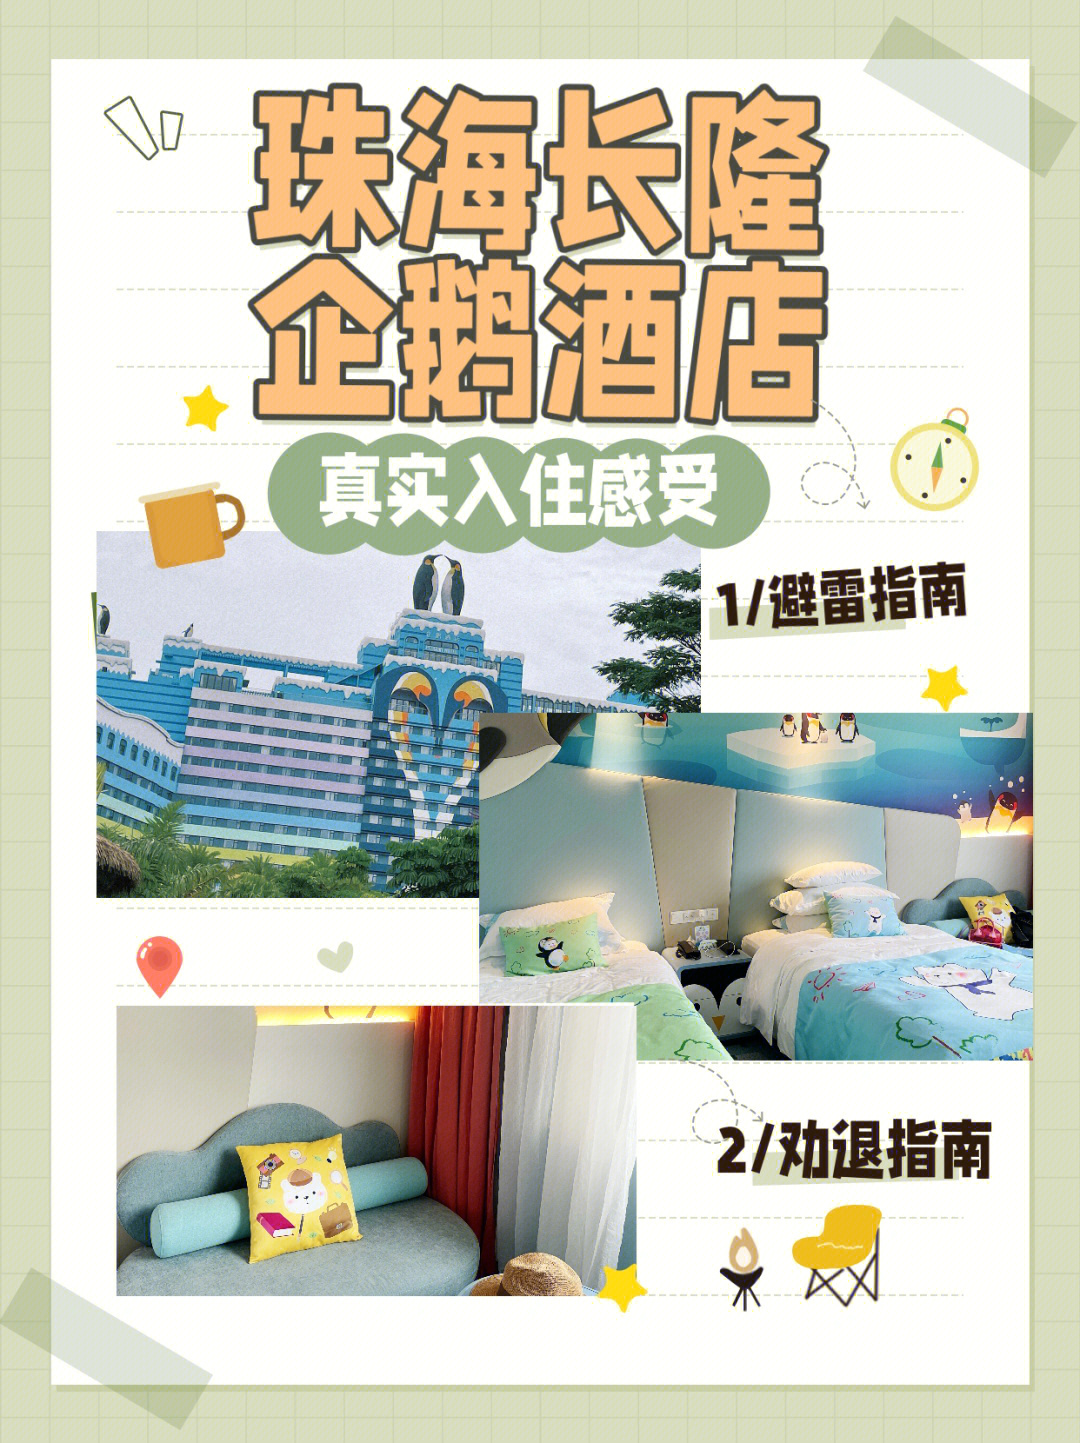 长隆企鹅酒店广告图片